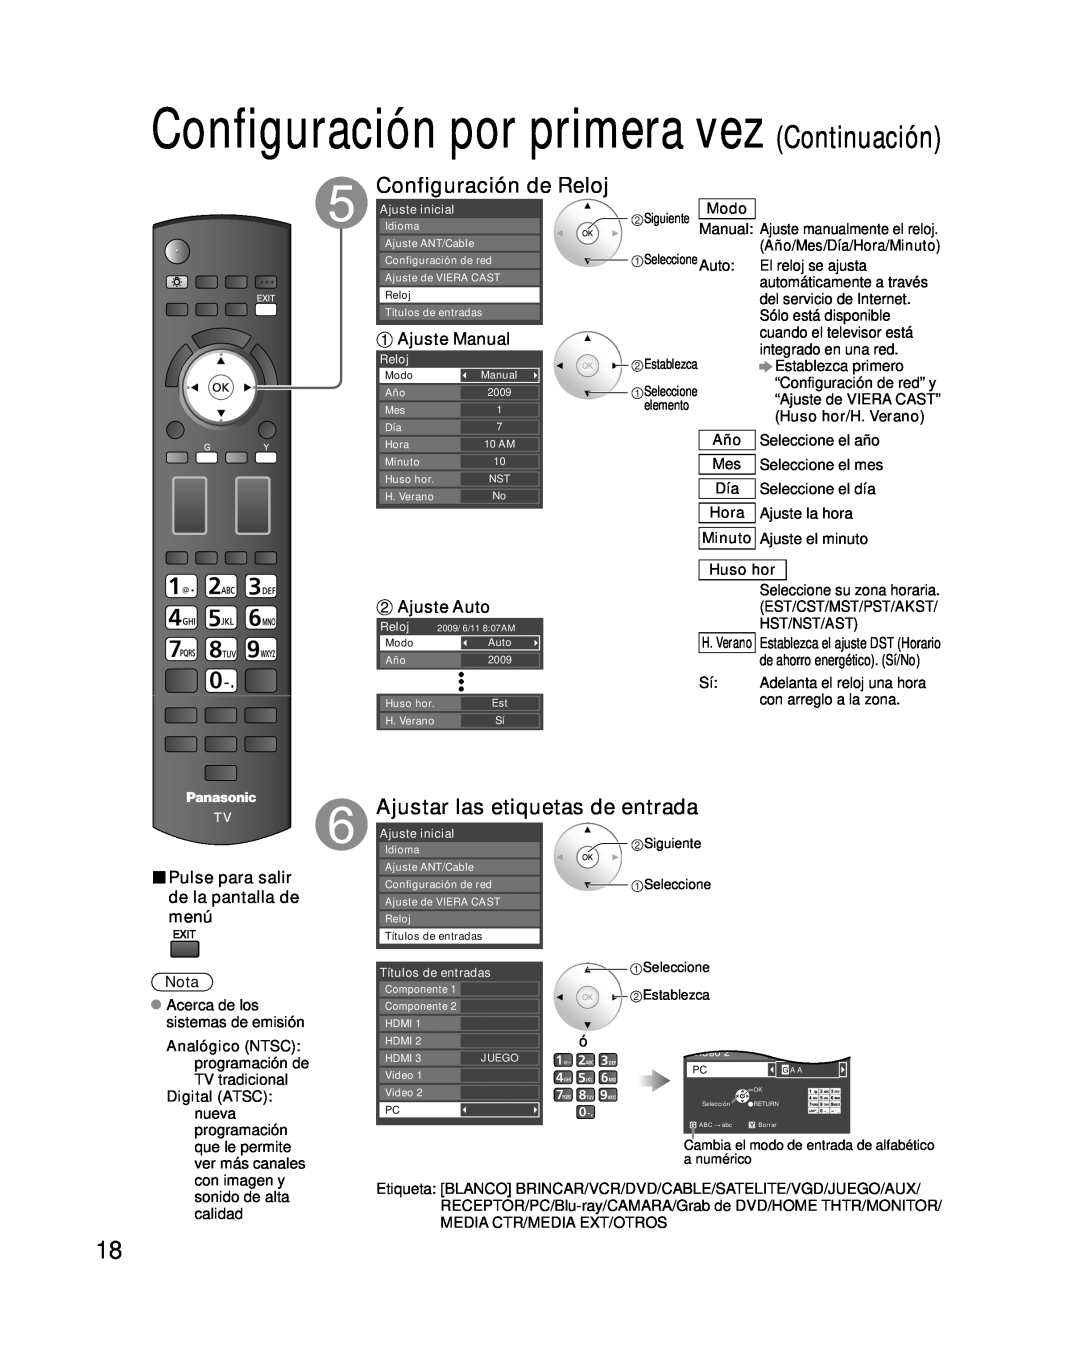 Panasonic TC-P54G10 Configuración por primera vez Continuación, Configuración de Reloj, Ajustar las etiquetas de entrada 